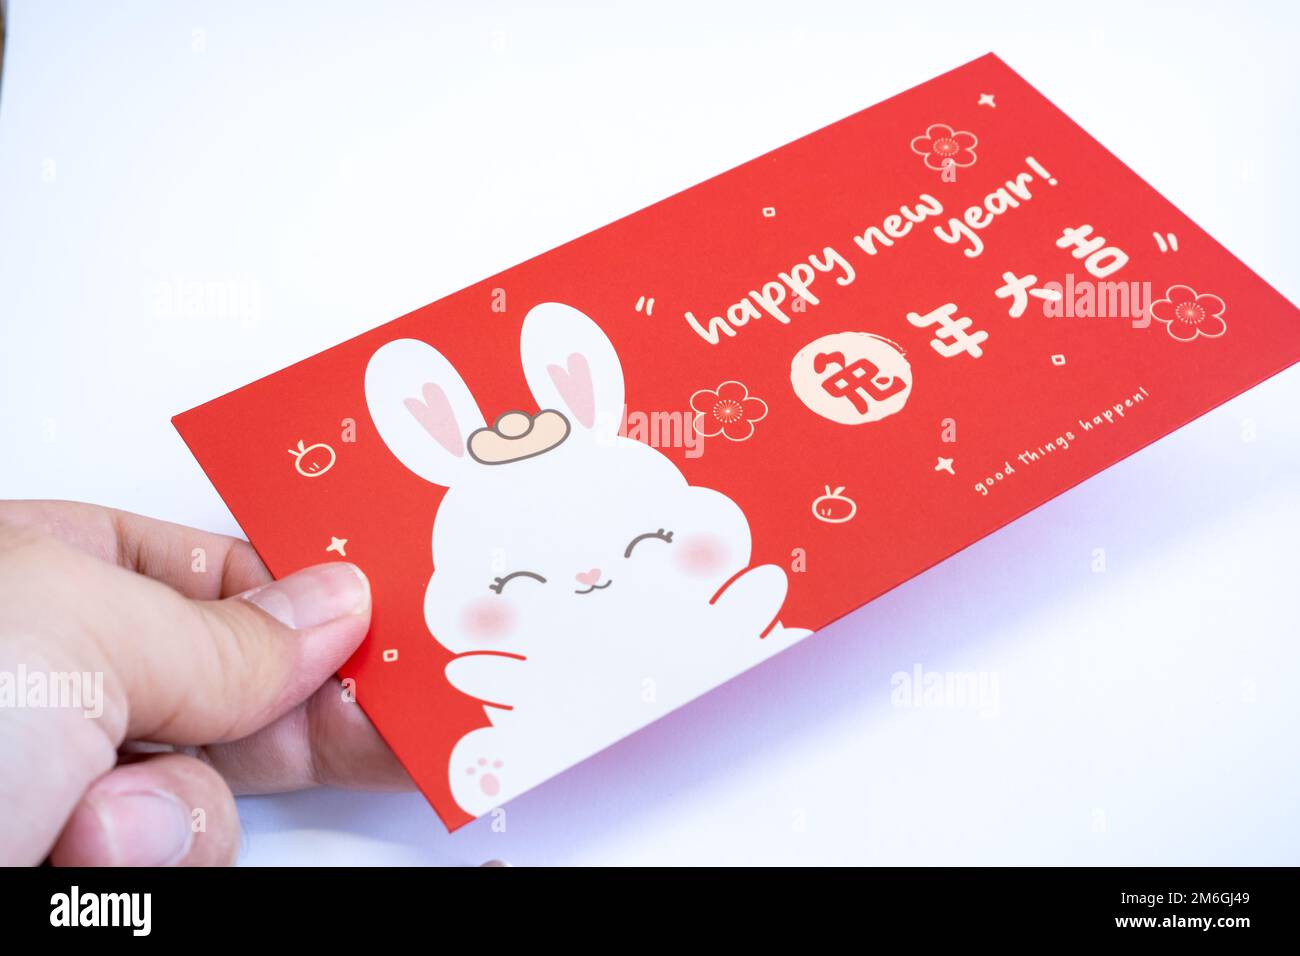 Distribuez une enveloppe rouge chinoise. Concept de la nouvelle année chinoise contexte . Traduction sur enveloppe rouge: 'Bonne année de lapin' Banque D'Images